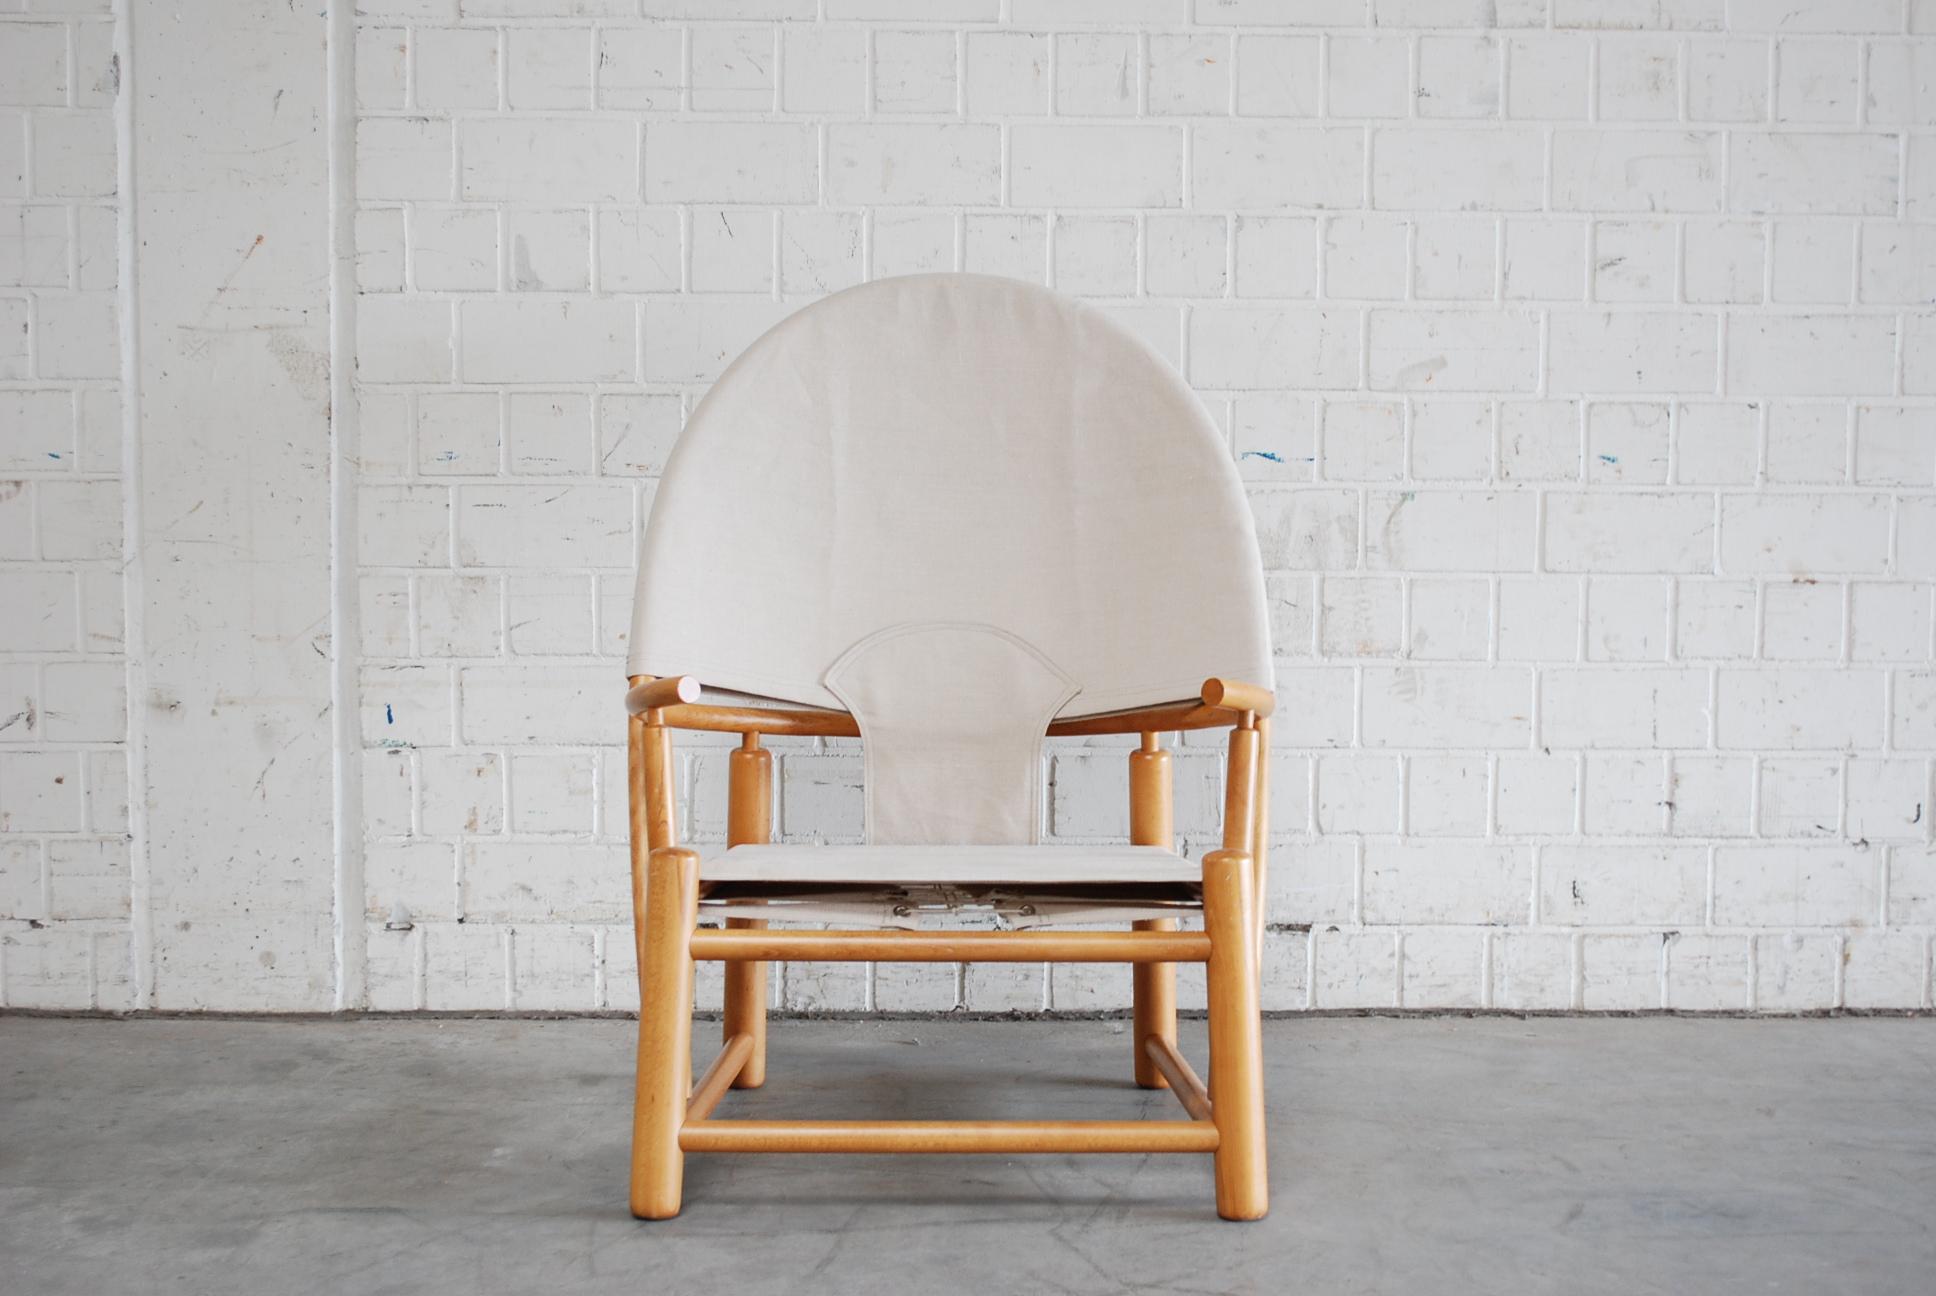 Der Hoop Lounge Chair wurde von Piero Palange und Werther Toffoloni für Germa entworfen.
Das Stück aus Buche und Segeltuch bleibt ein Klassiker des italienischen Bugholzdesigns.